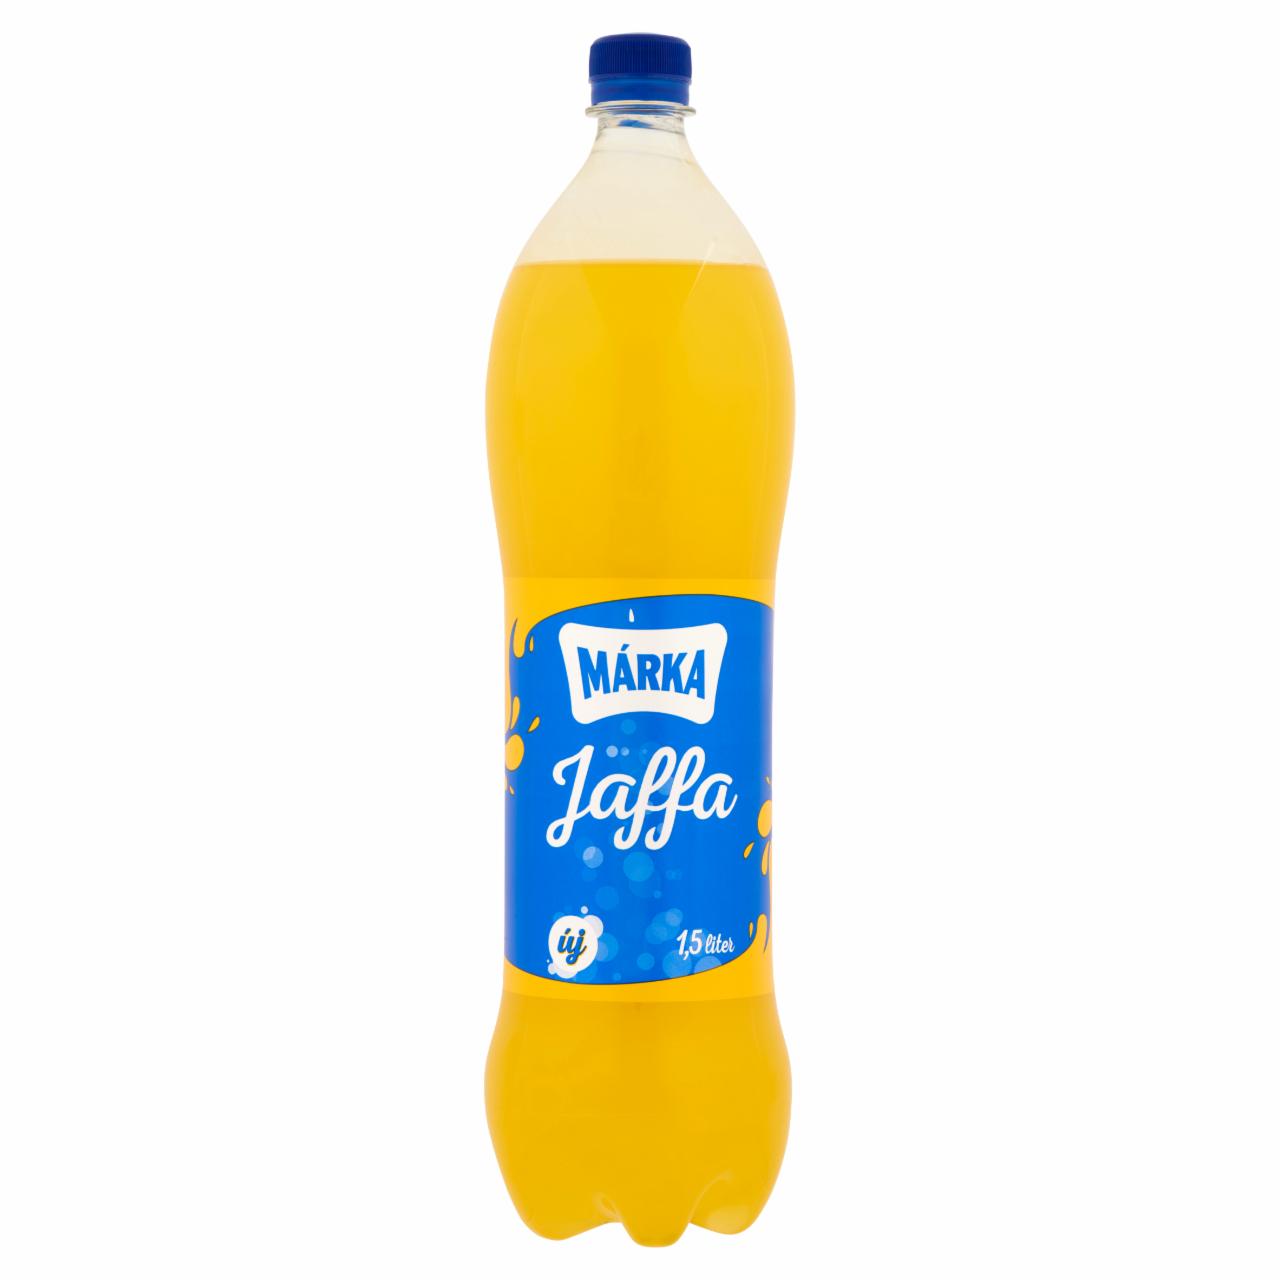 Képek - Márka Jaffa narancsízű szénsavas üdítőital cukorral és édesítőszerrel 1,5 l